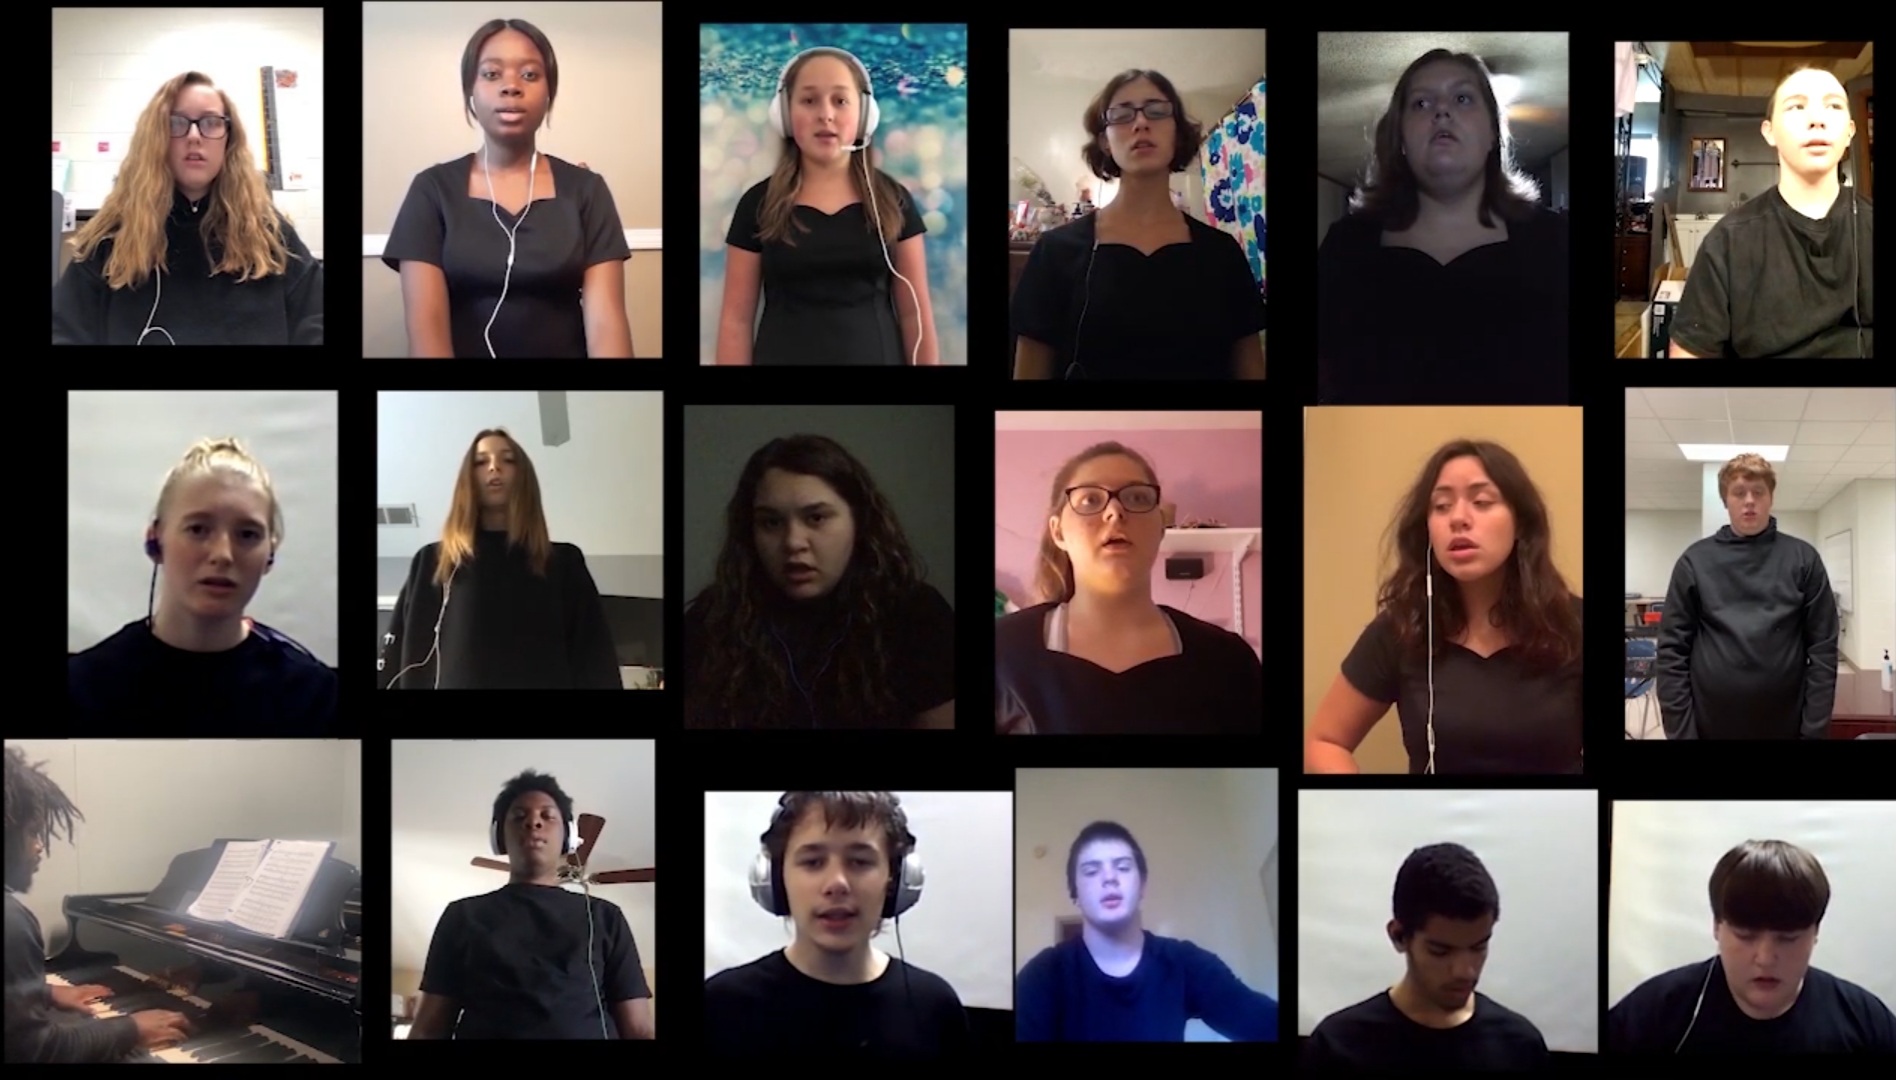 Virtual Choir